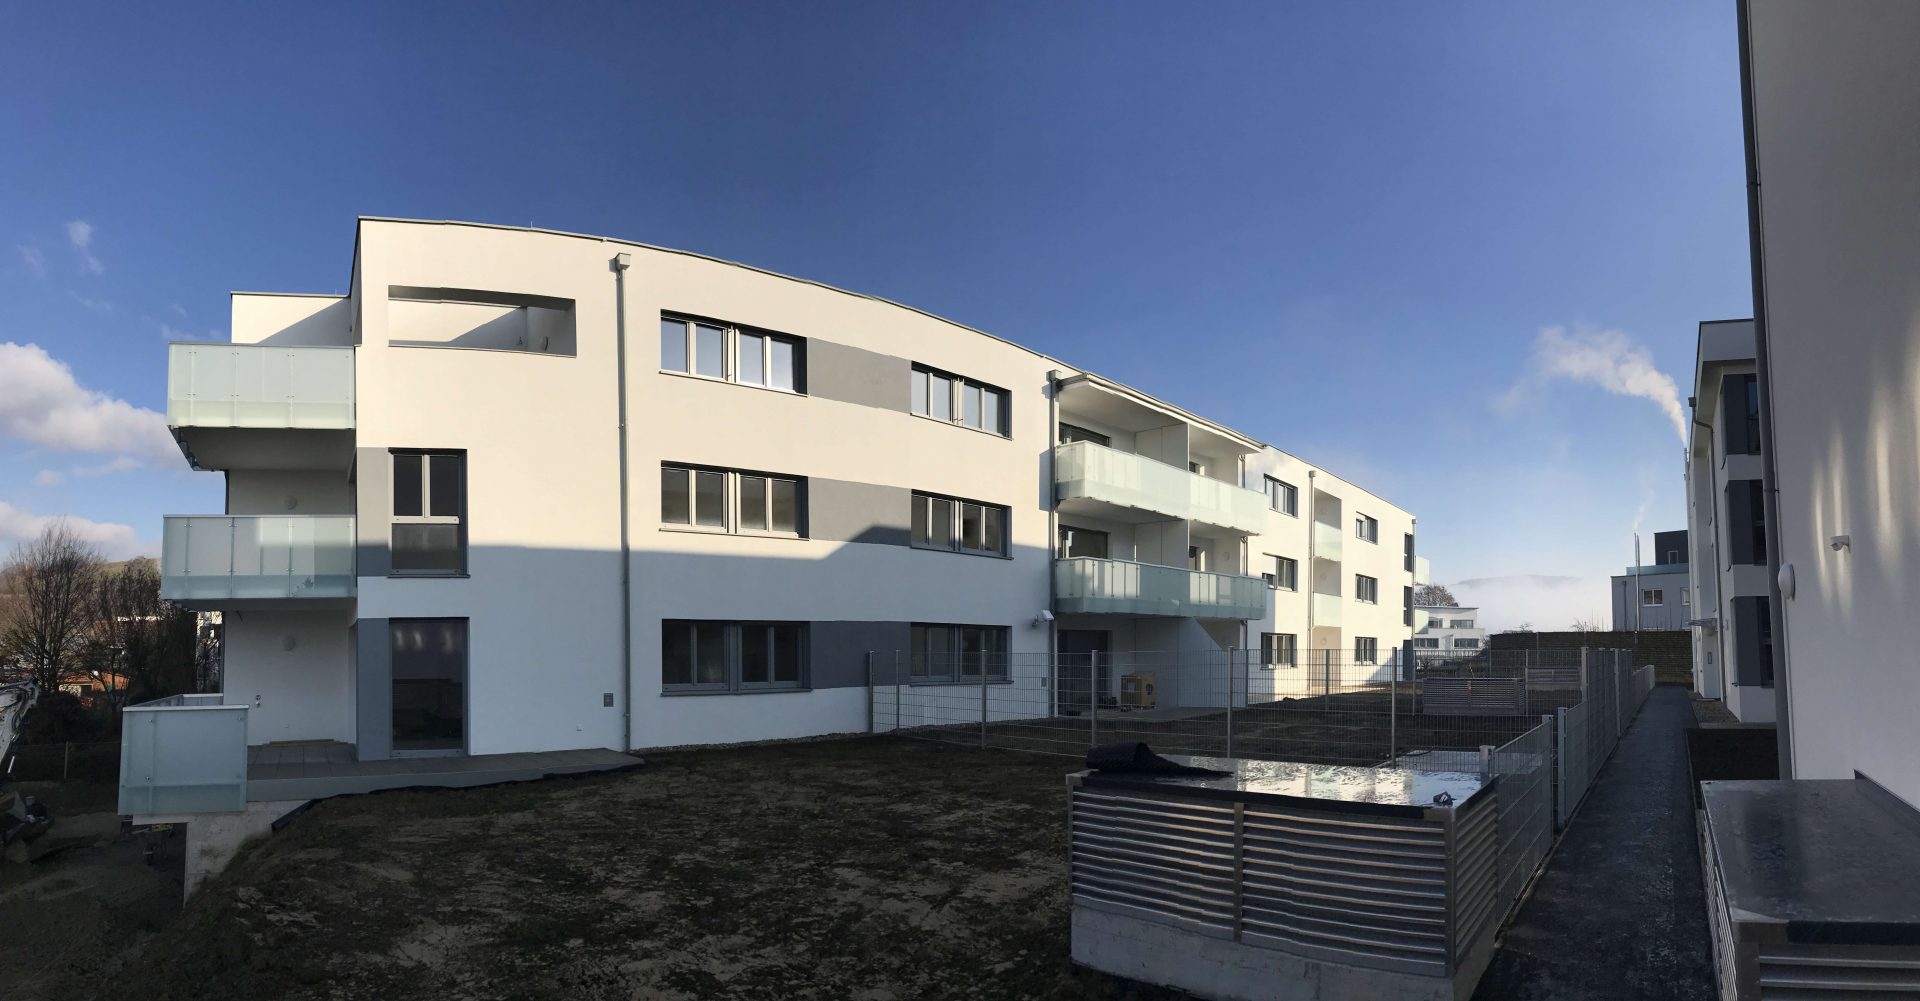 Eigentumswohnungen in Urfahr/Katzbach - Hentschläger Immobilien - Wohnbau